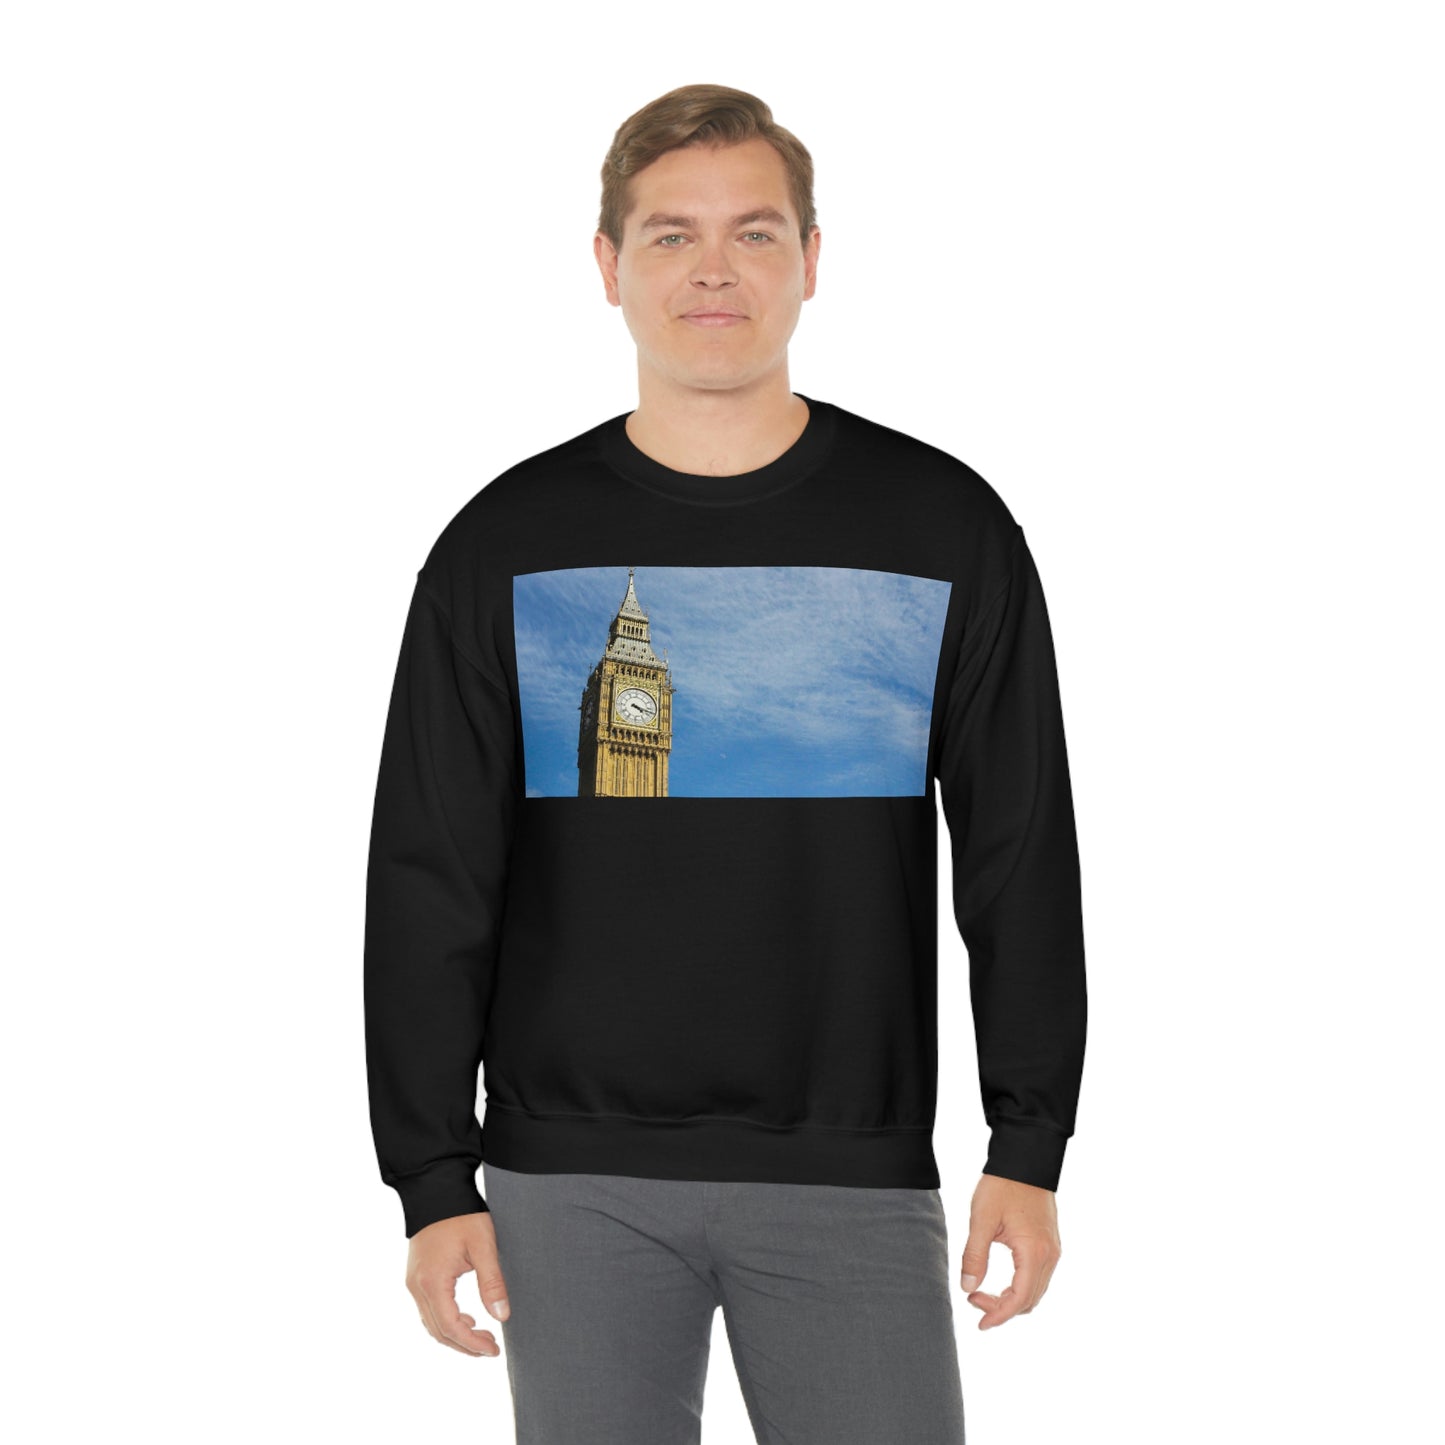 Big Ben Sweatshirt